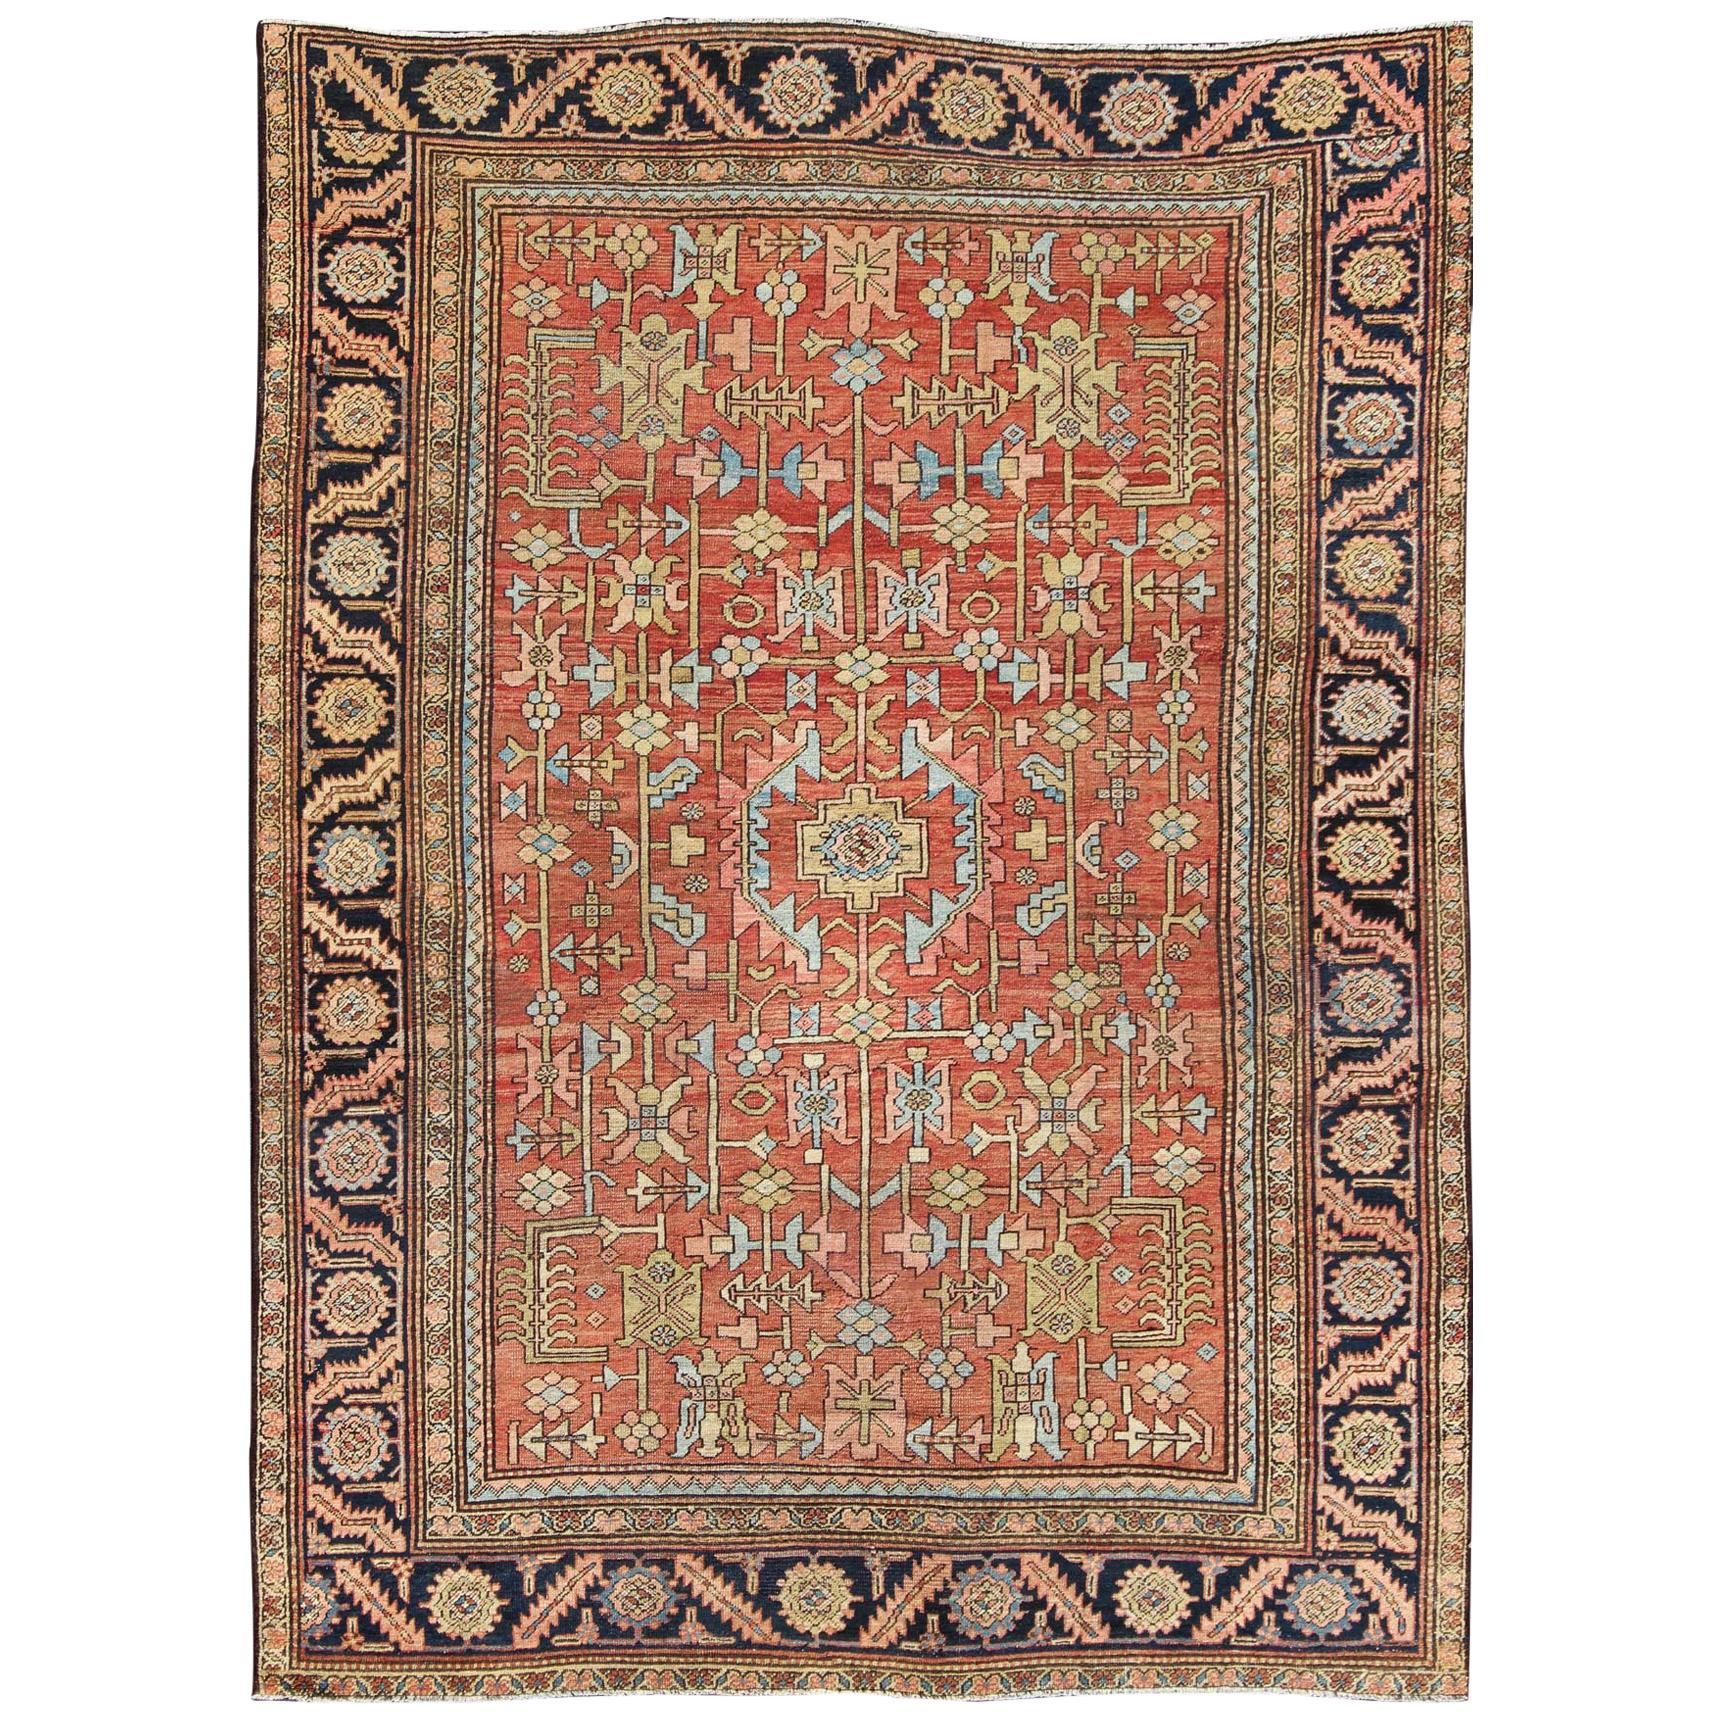   Antiker persischer Serapi-Teppich mit geometrischem All-Over-Design